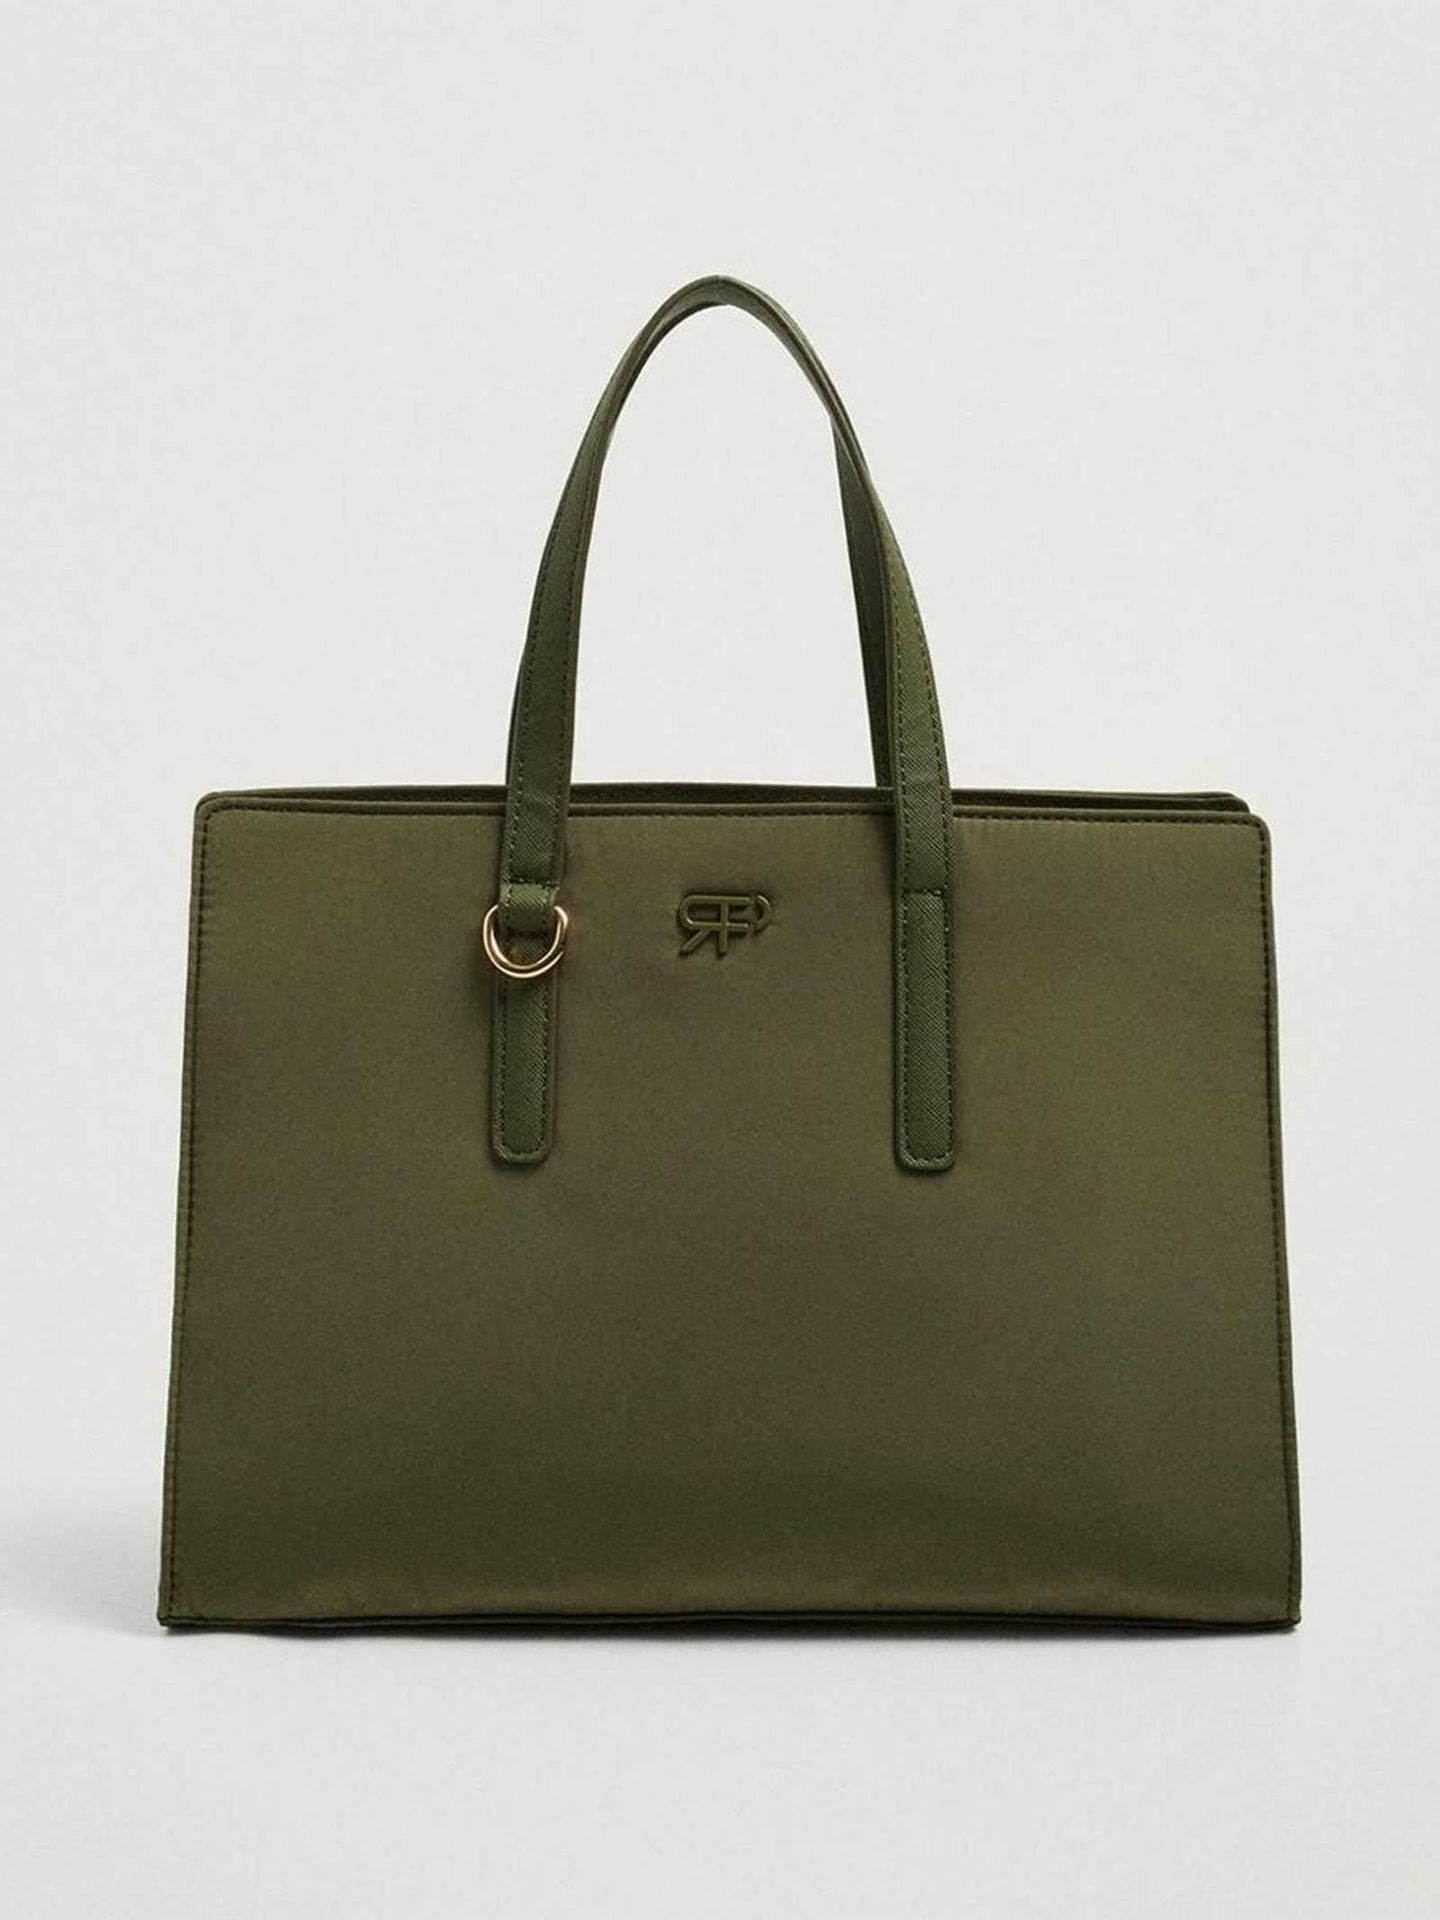 Bolso verde de Parfois estilo shopper. (El Corte Inglés/Cortesía)